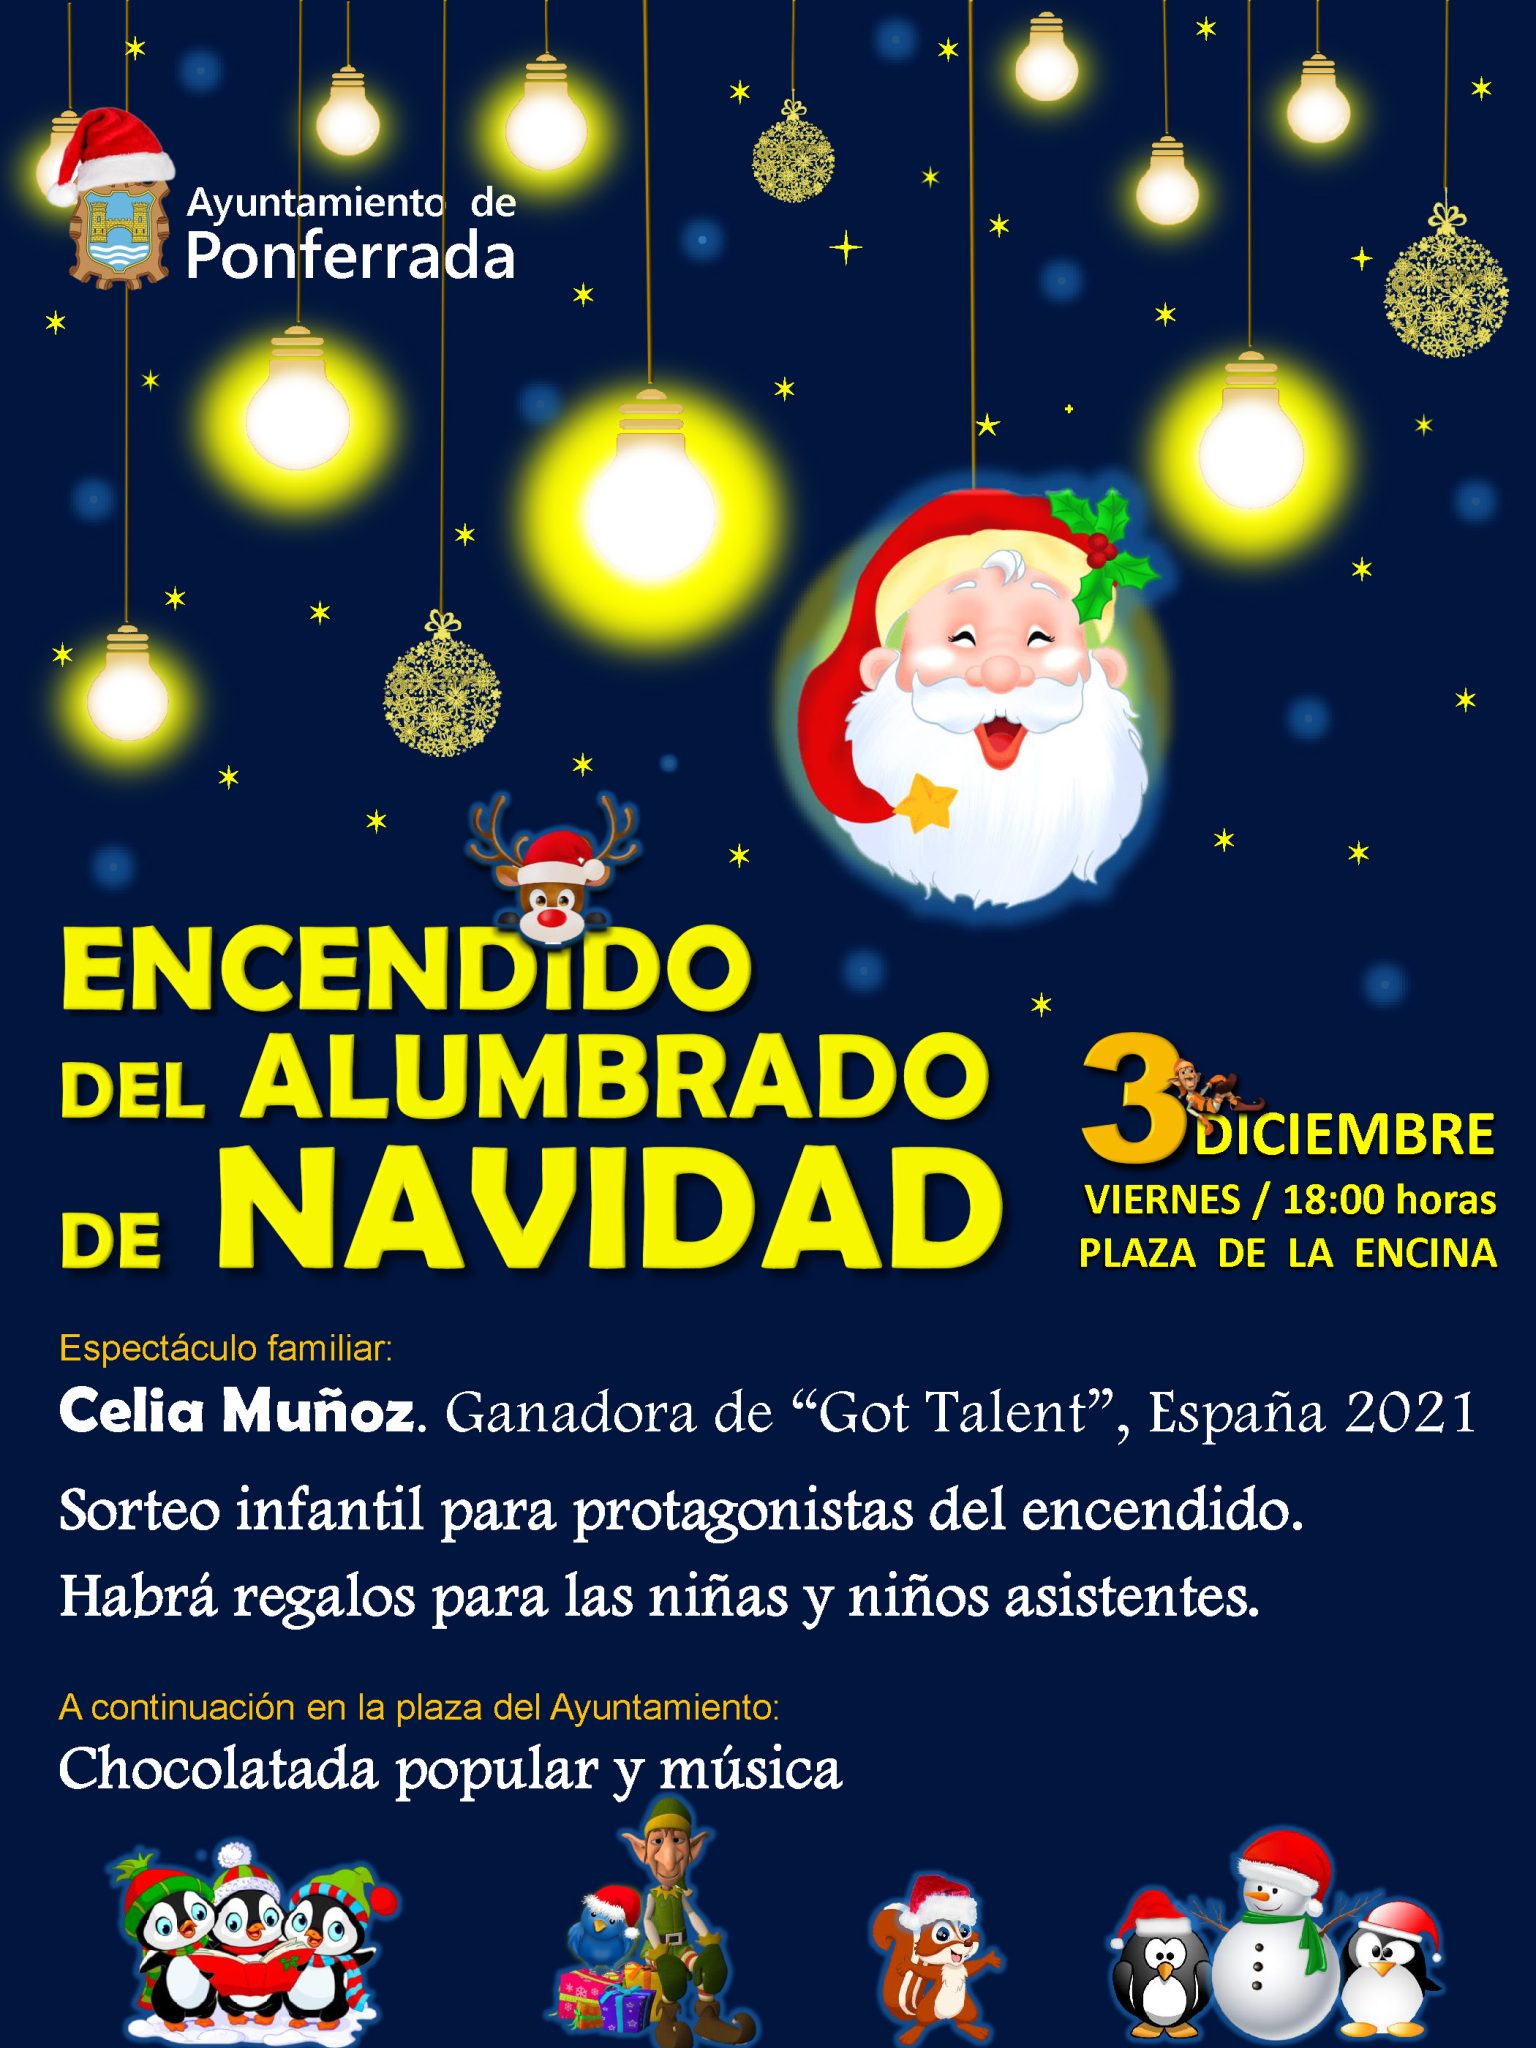 Ponferrada inaugurará la iluminación navideña el 3 de diciembre con actuación y chocolatada en la Plaza del Ayuntamiento 2